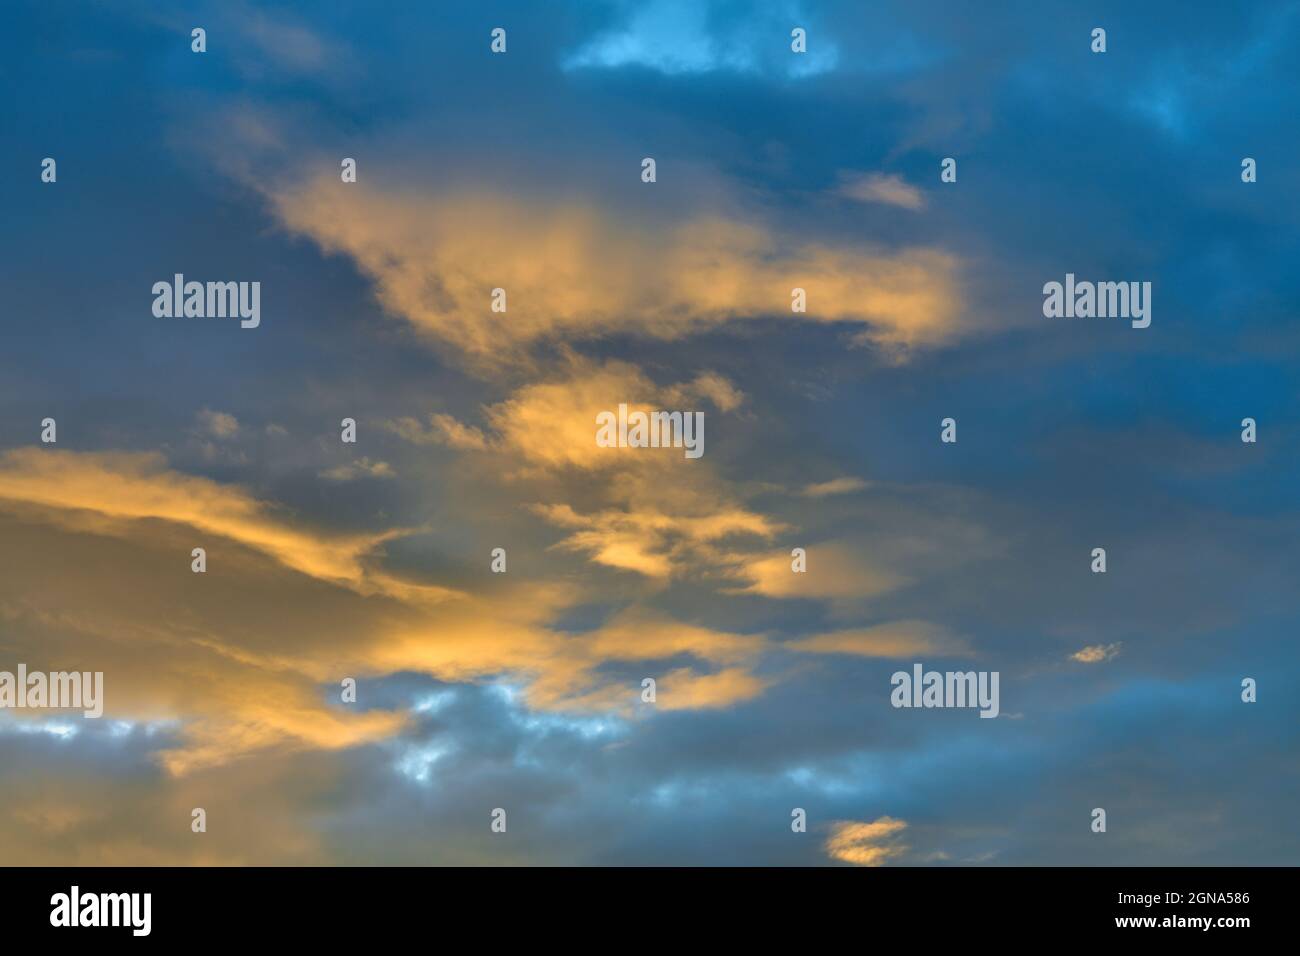 Un'immagine paesaggistica della splendida nuvola che riflette la luce del sole che tramonta nell'Alberta Canada occidentale. Foto Stock